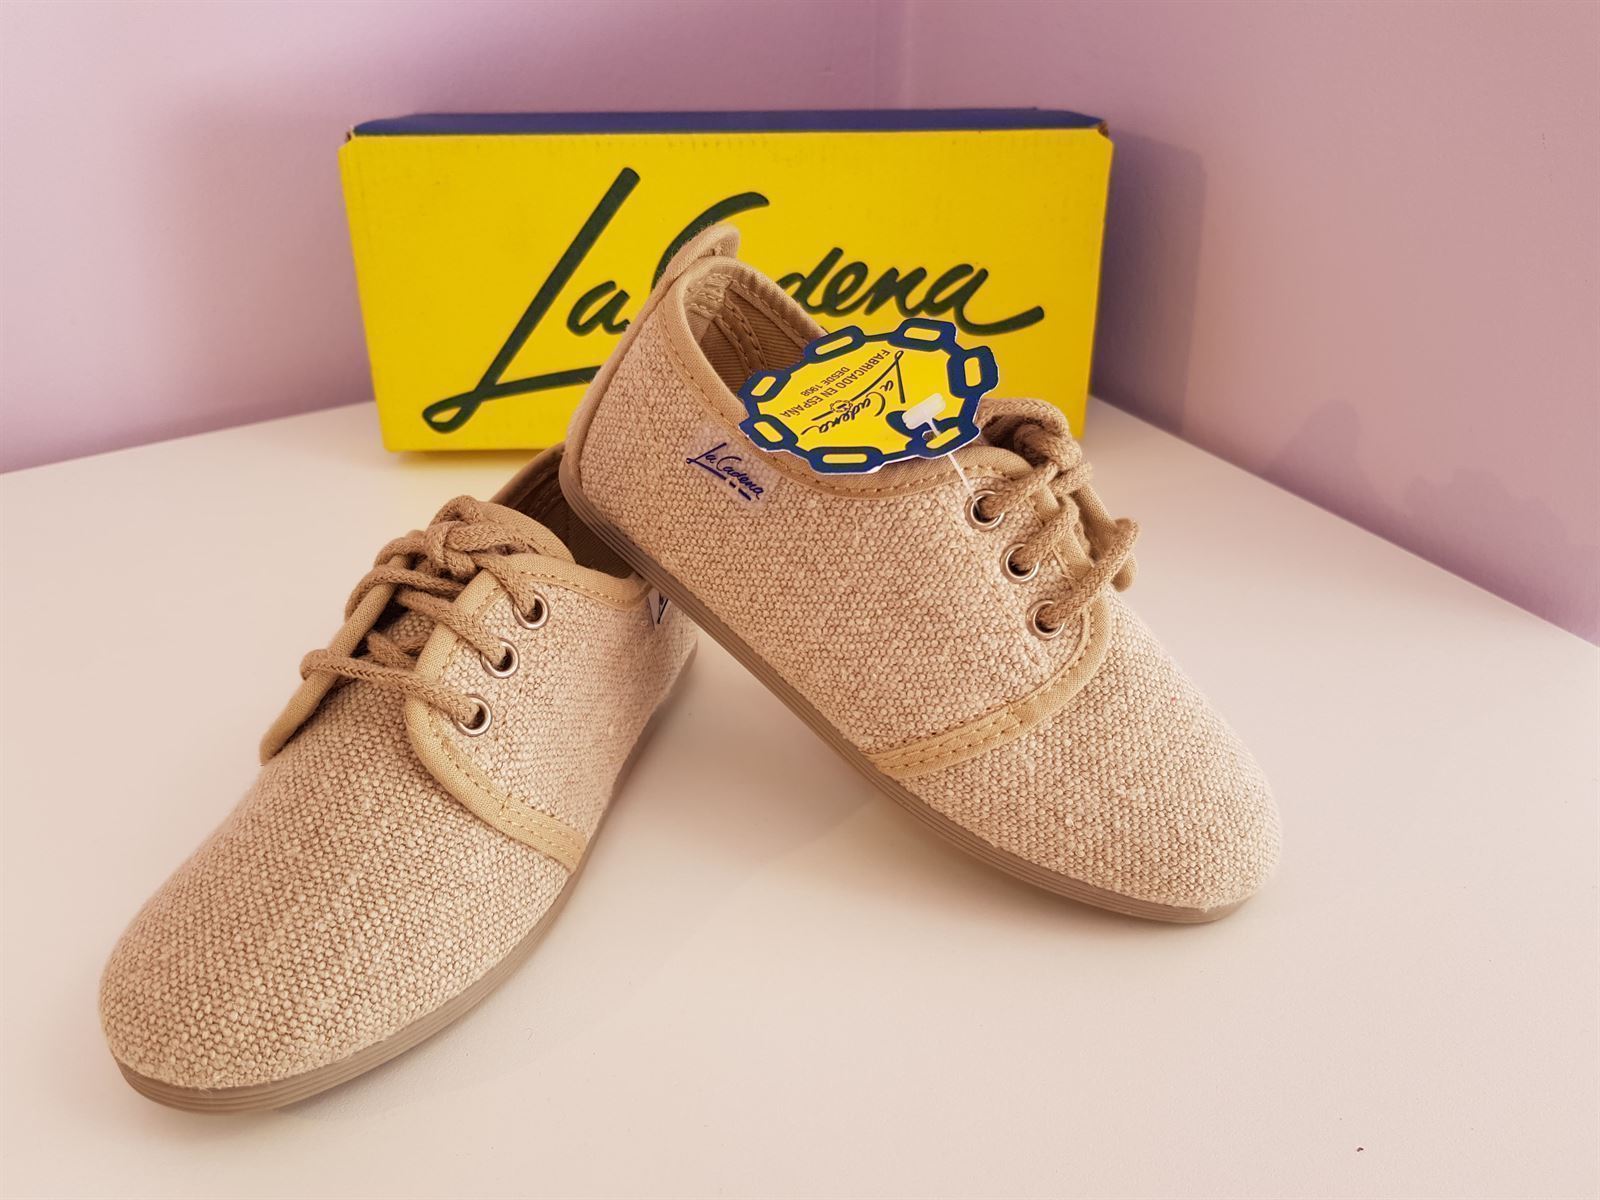 Zapato blutcher color lino - Imagen 3